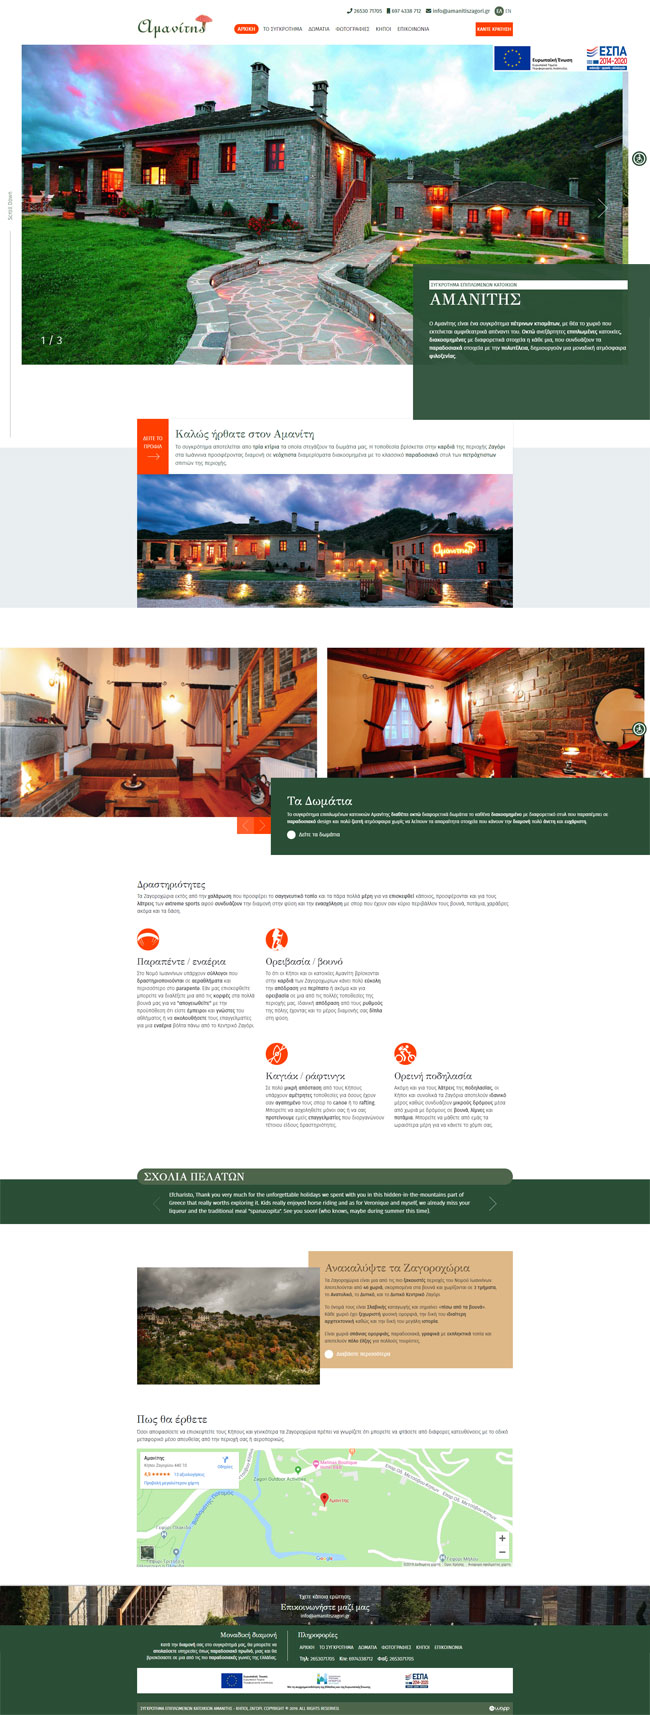 Κατασκευή responsive ιστοσελίδας για τo συγκρότημα Αμανίτης στο Ζαγόρι